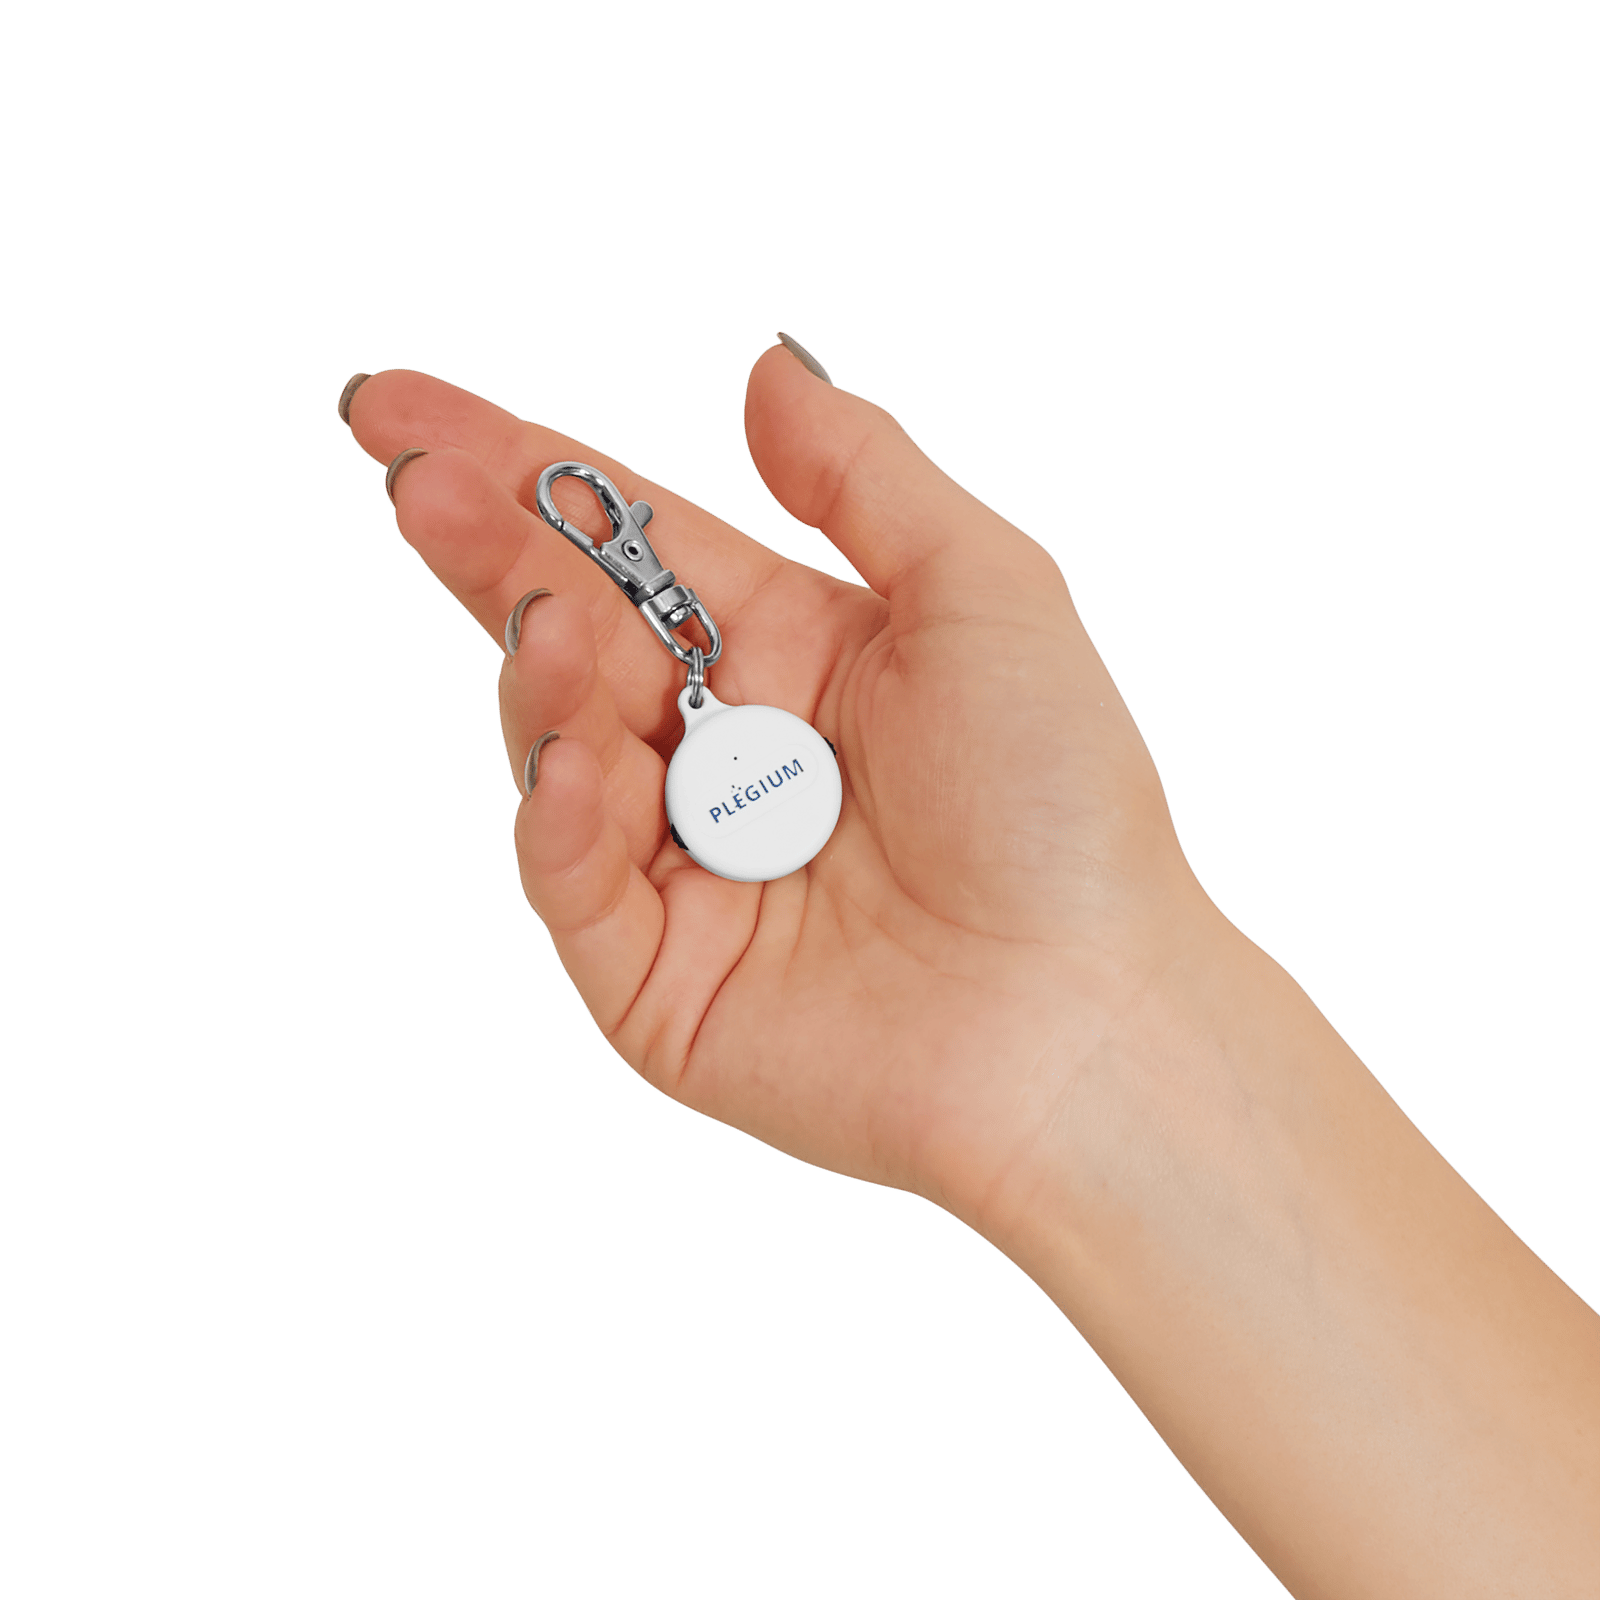 Plegium Smart Emergency Button 1 st